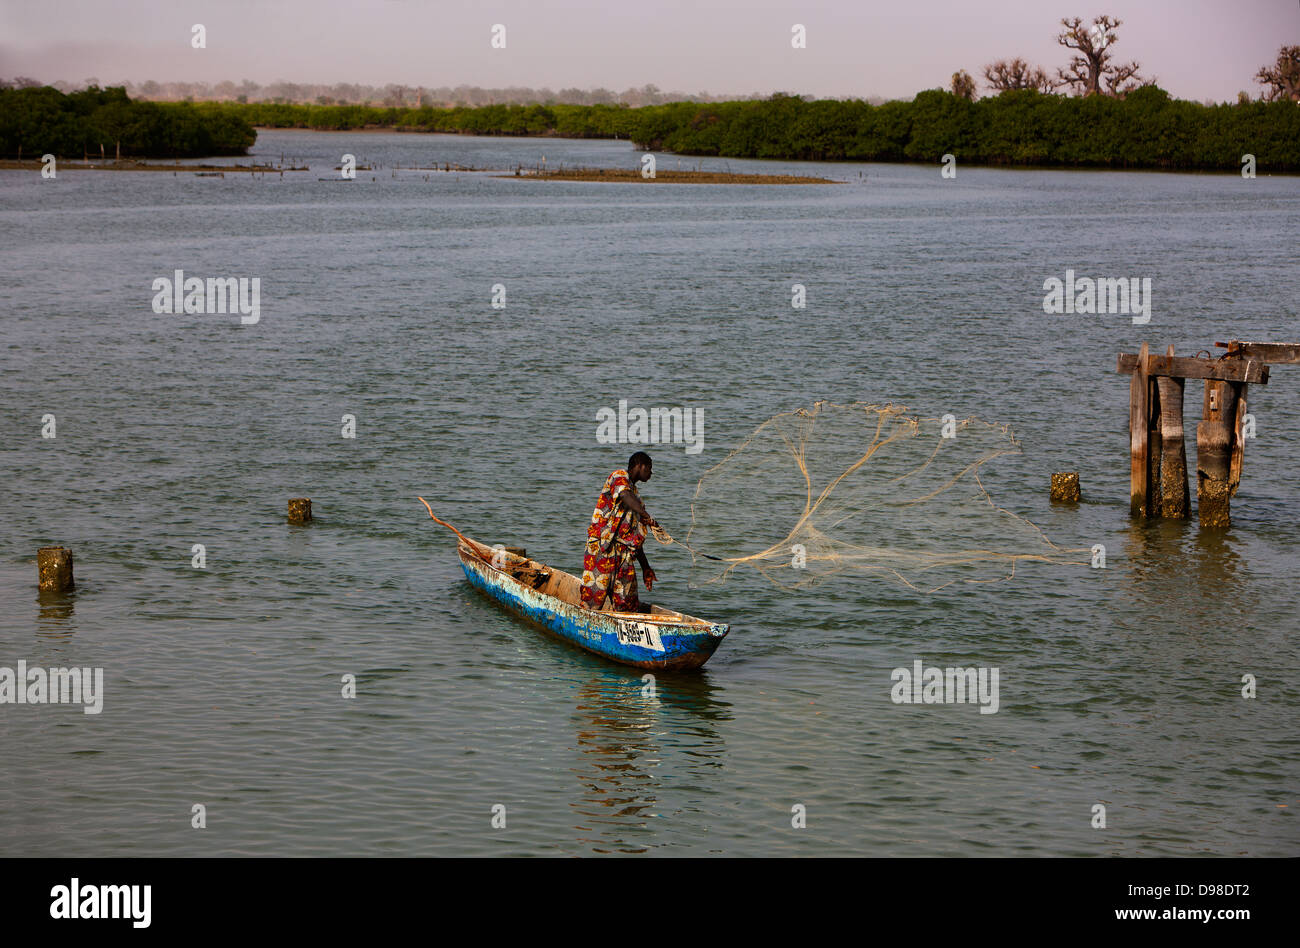 Afrique Sénégal Afrique de l'Ouest l'île de Fadiouth fisherman casting net avec canoe (Pirogue) Banque D'Images